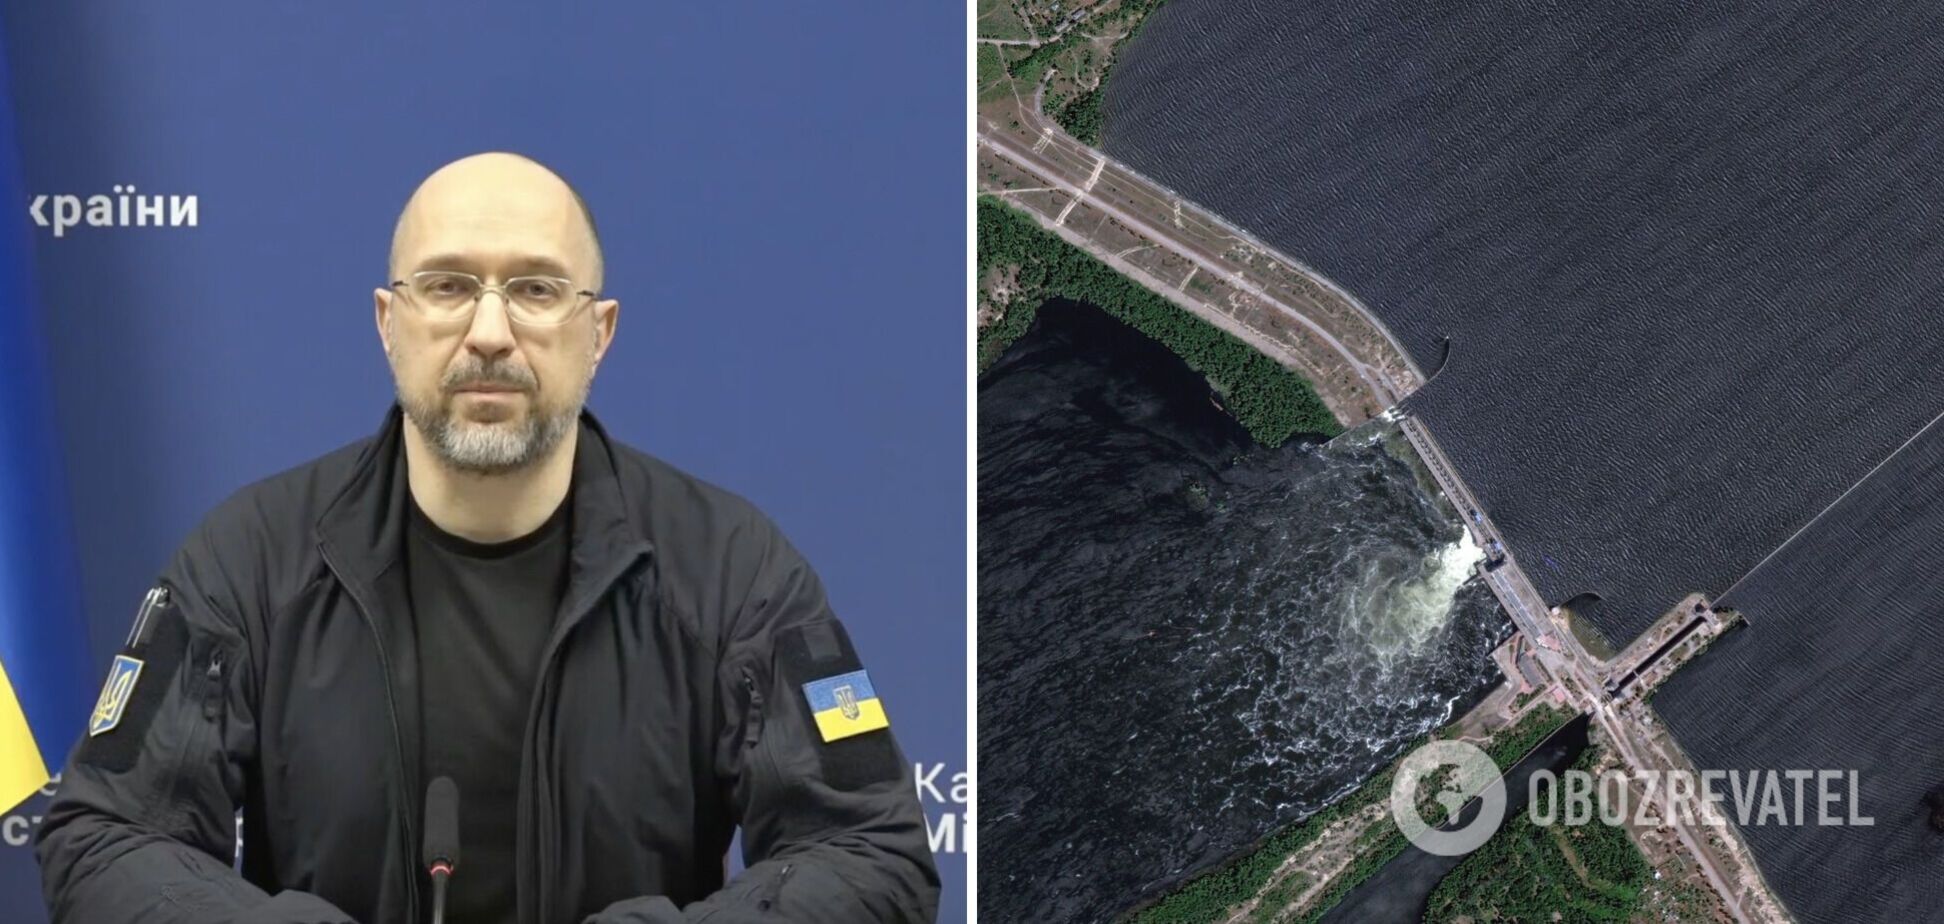 Каховская ГЭС будет восстановлена, заявил Денис Шмыгаль